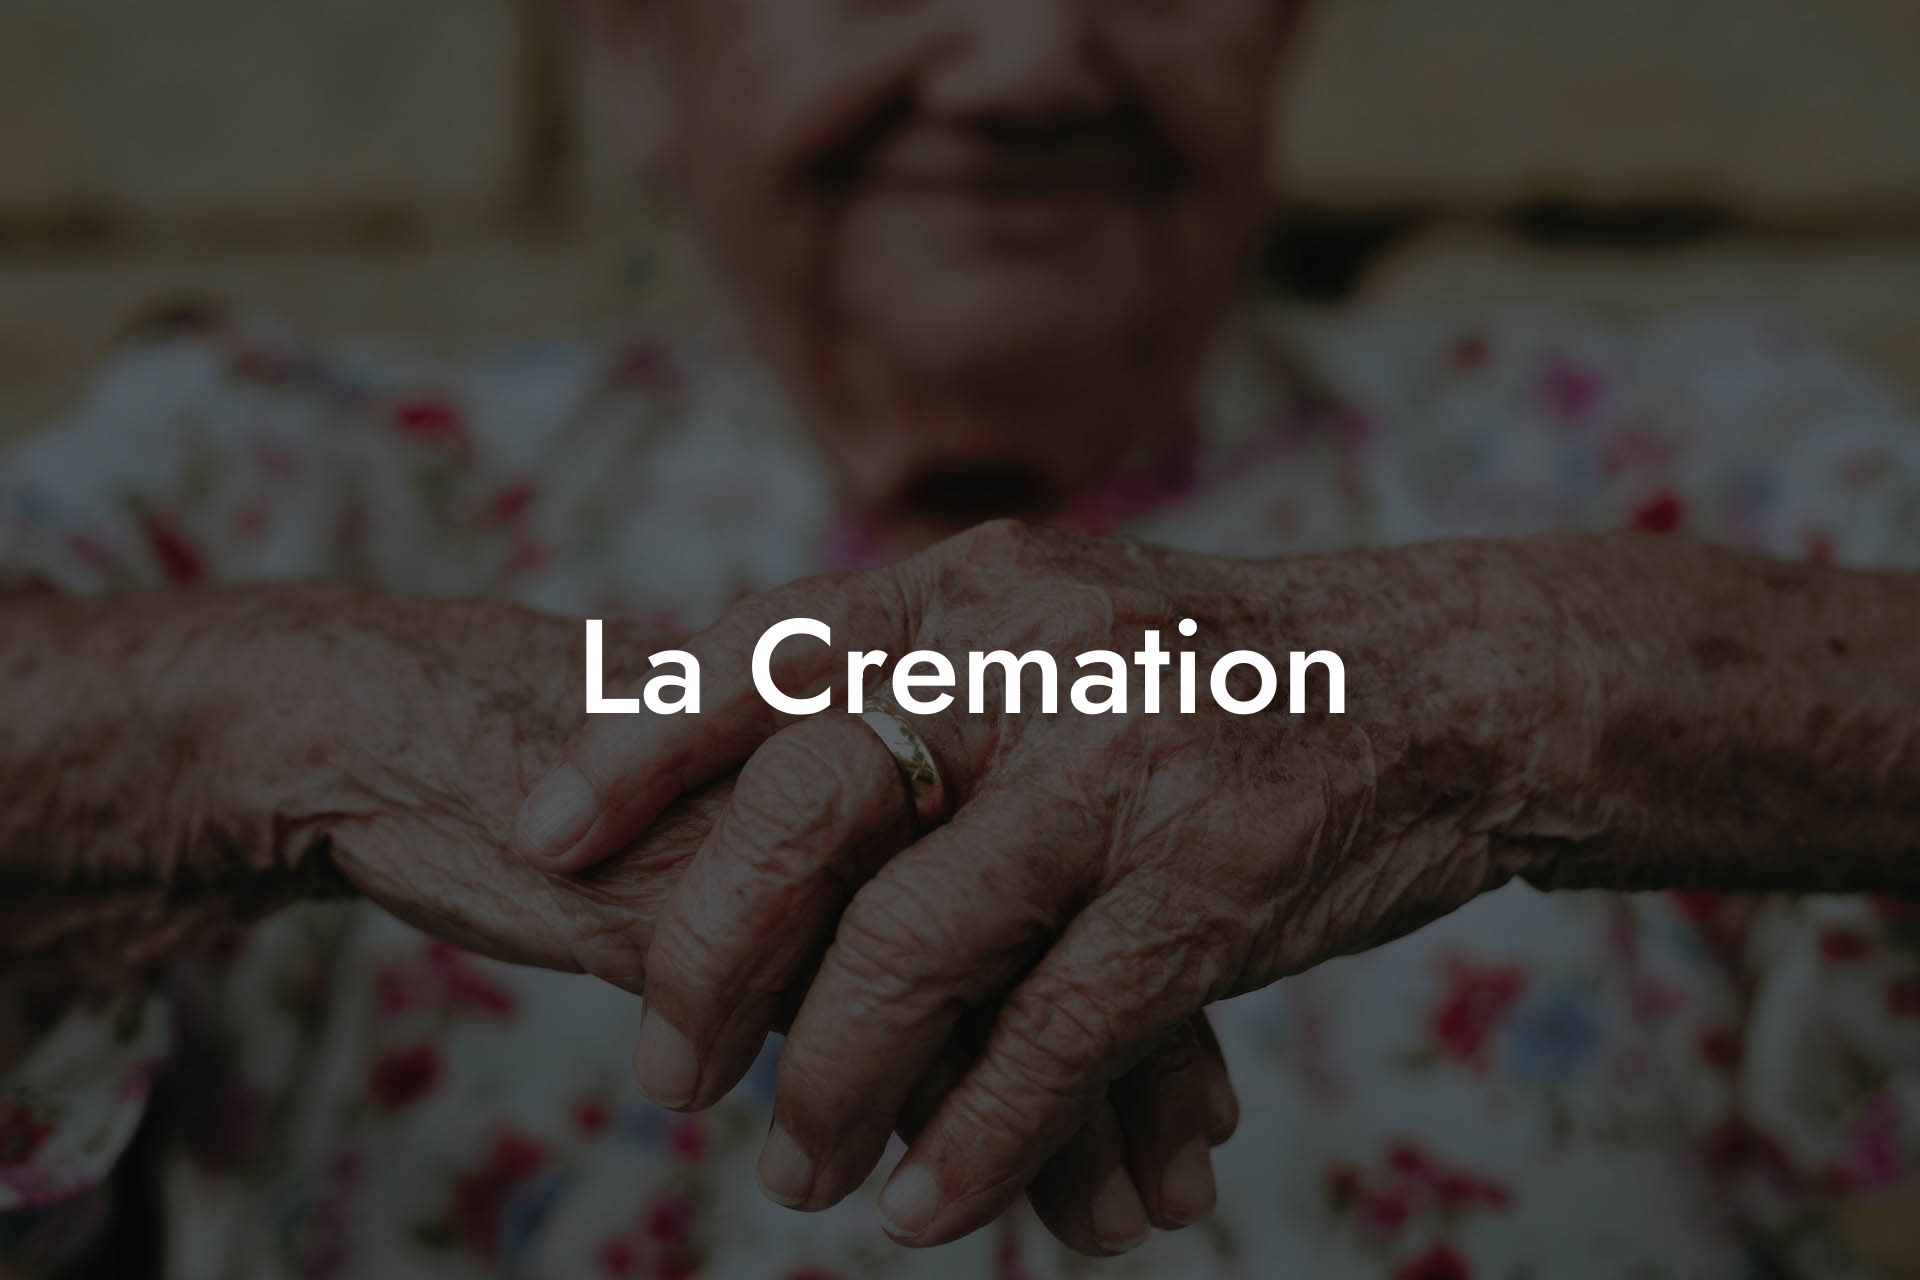 La Cremation